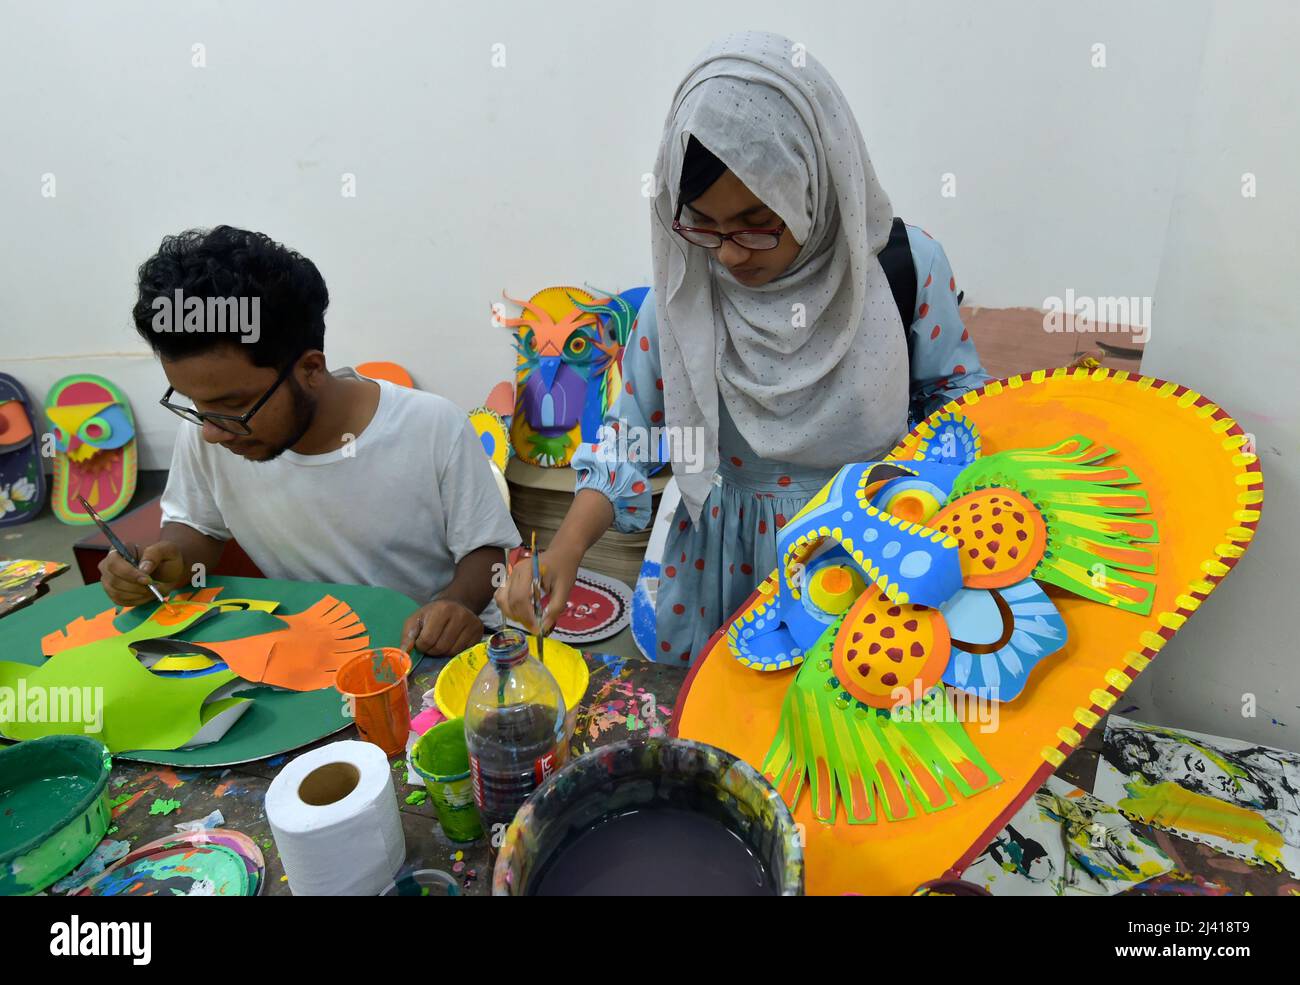 Dhaka. 11. April 2022. Studenten stellen traditionelle Papierarbeiten für das bengalische Neujahr in Dhaka, Bangladesch, am 10. April 2022 her. Das neue Jahr in Bangladesch wird in der Regel jedes Jahr am 14. April gefeiert. Quelle: Xinhua/Alamy Live News Stockfoto